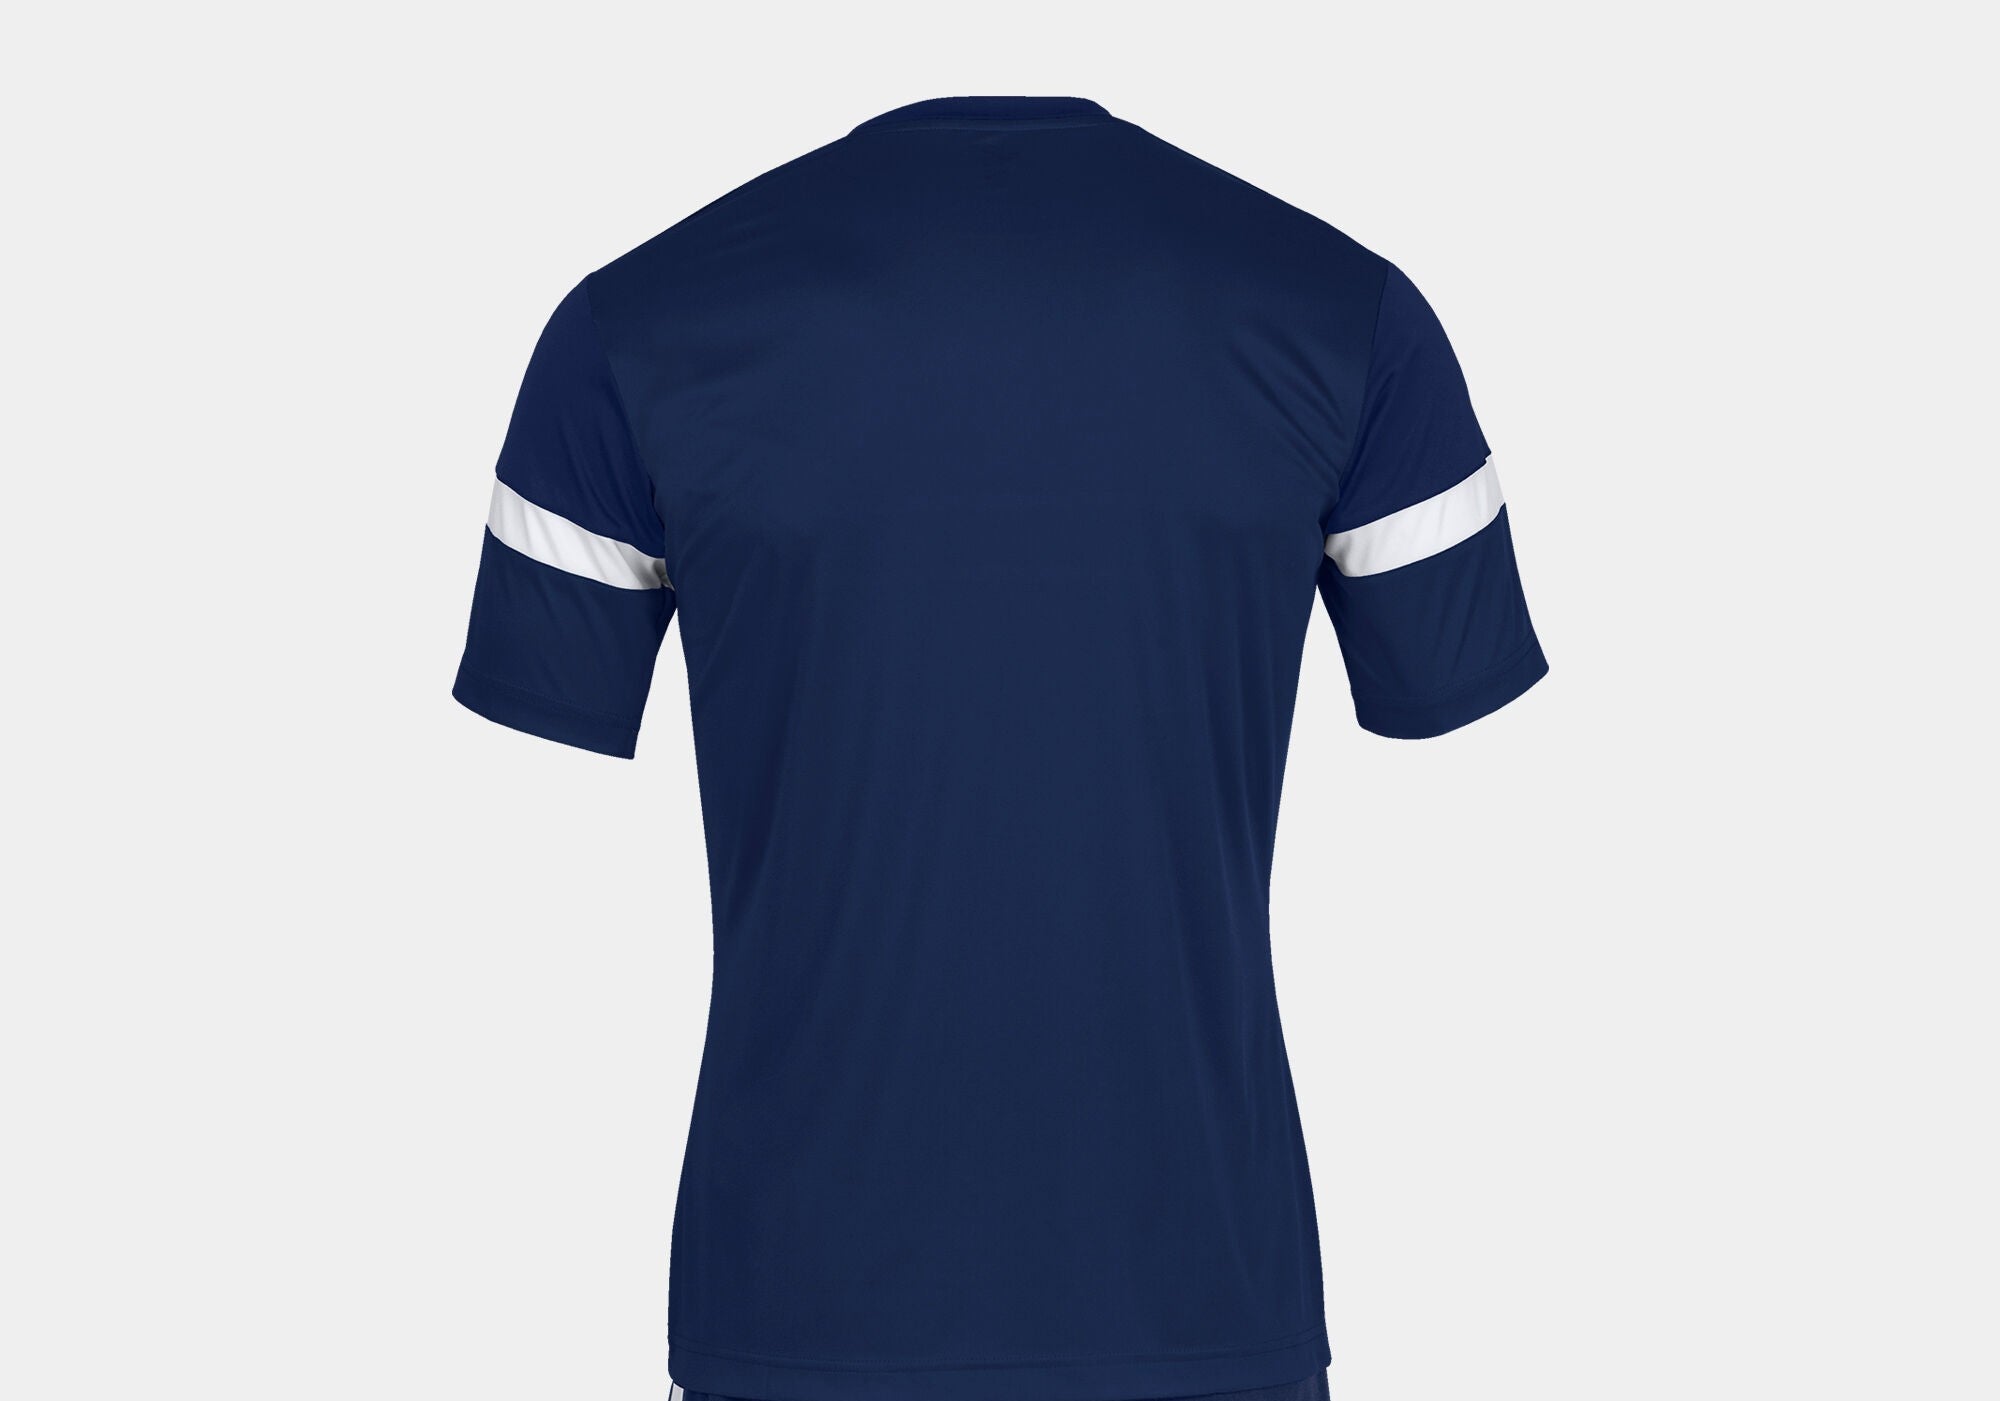 Joma Danubio Polyester T-shirt For Boys-KTST-2190Navy white